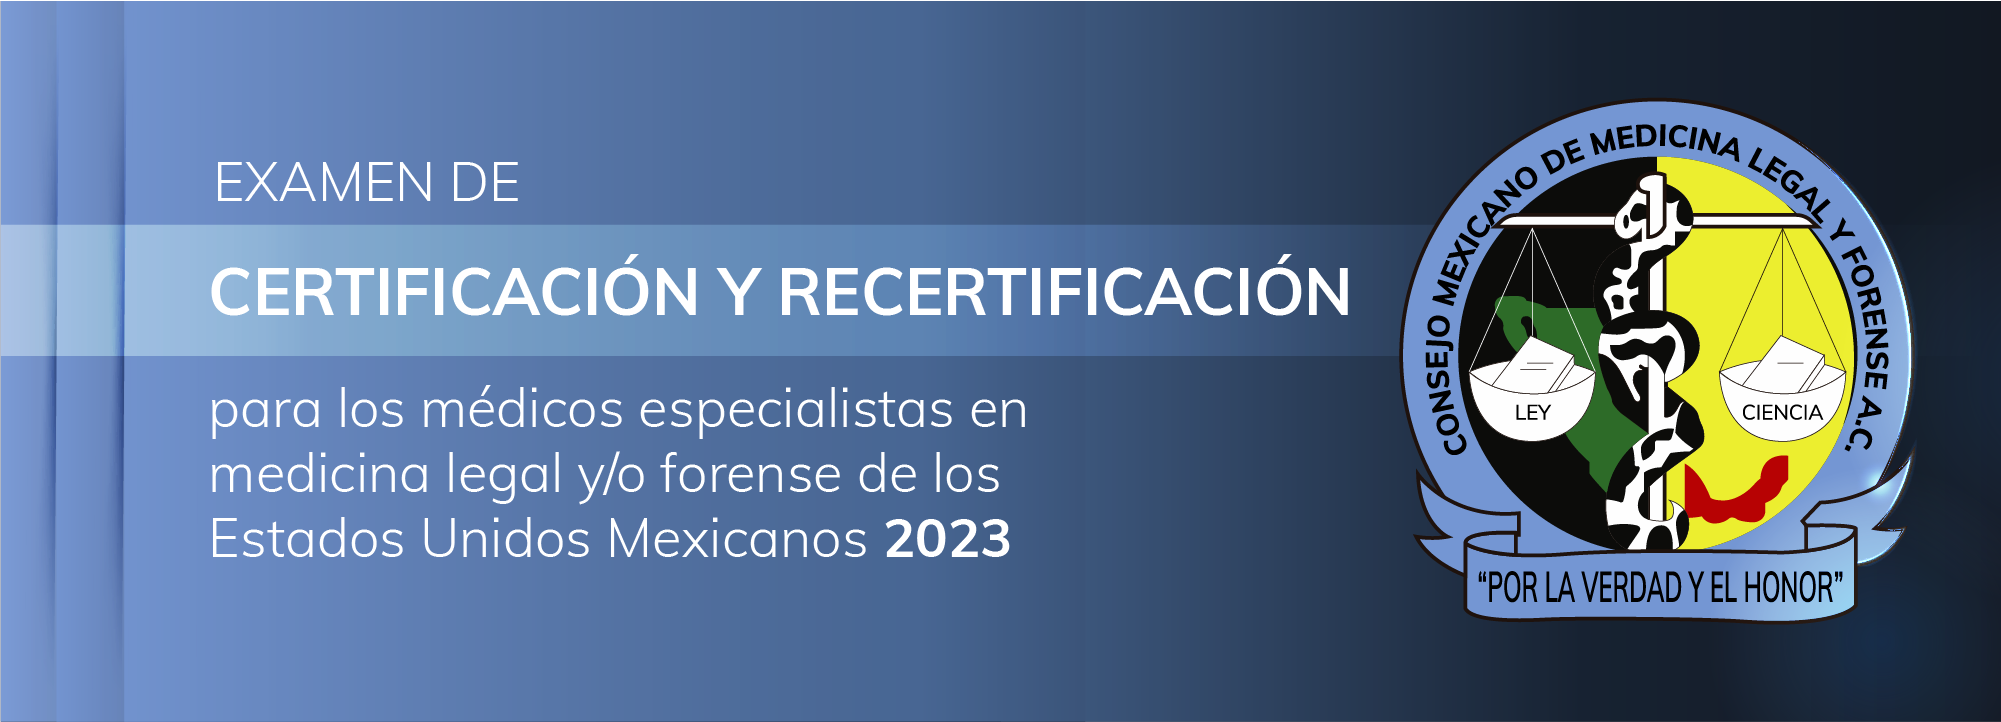 Examen de certificación y recertificación - Septiembre 2023 Exa-001